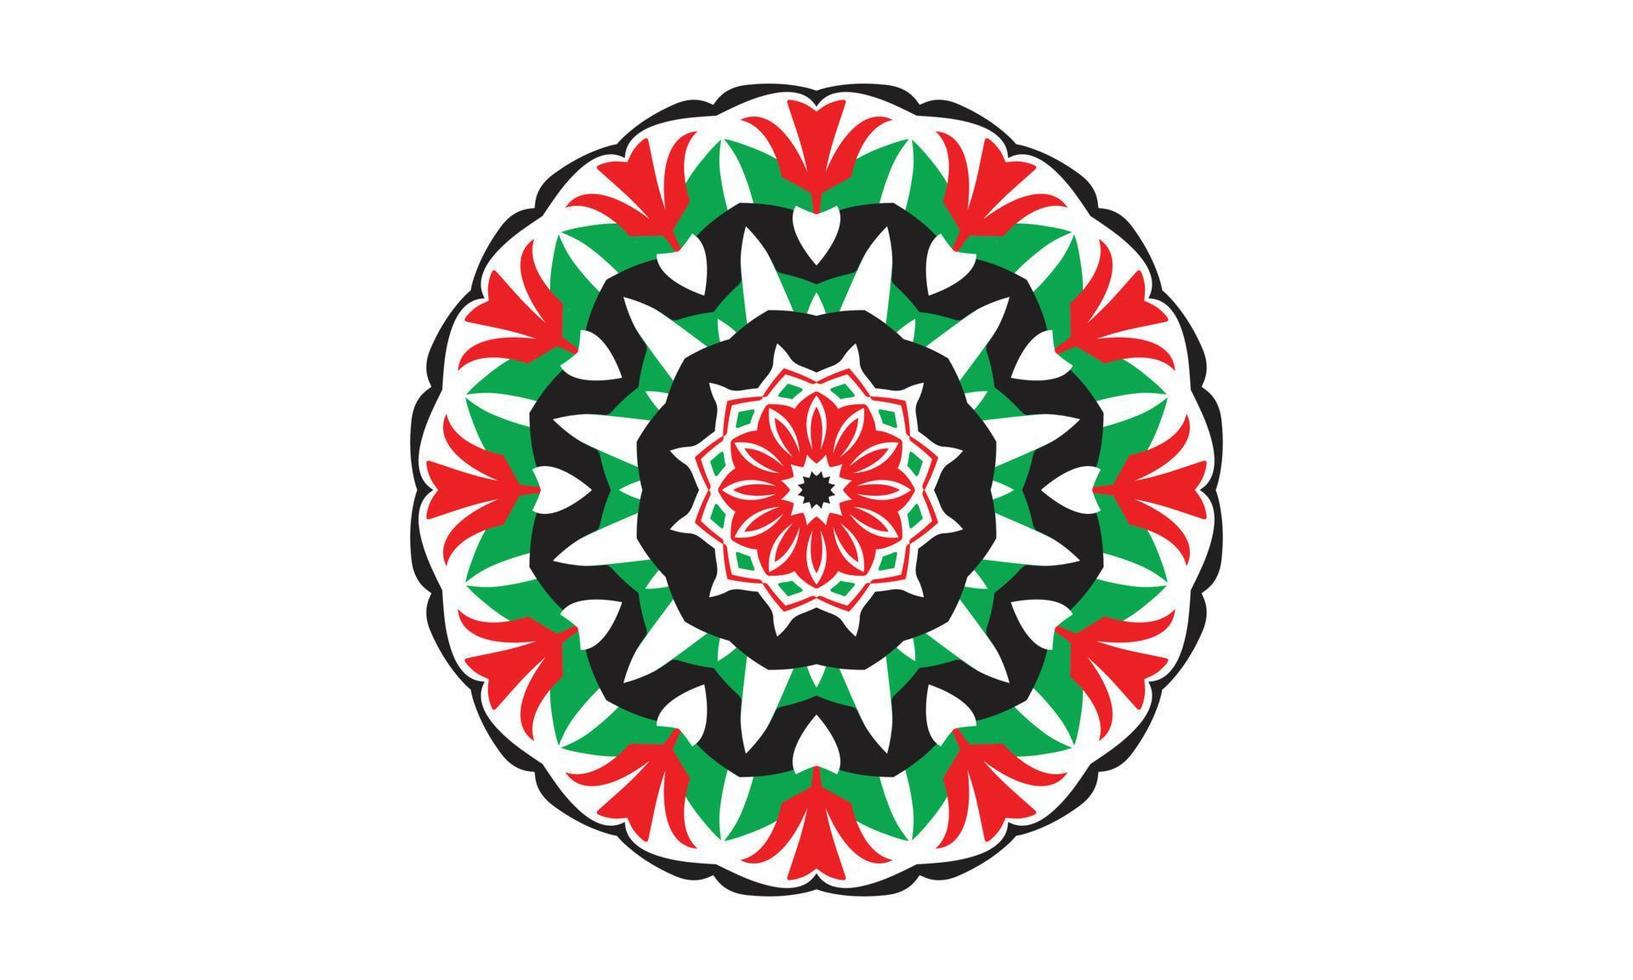 Luxus-Mandala-Design-Vektor-Hintergrund Vintage abstrakte Blumenmuster-Design vektor